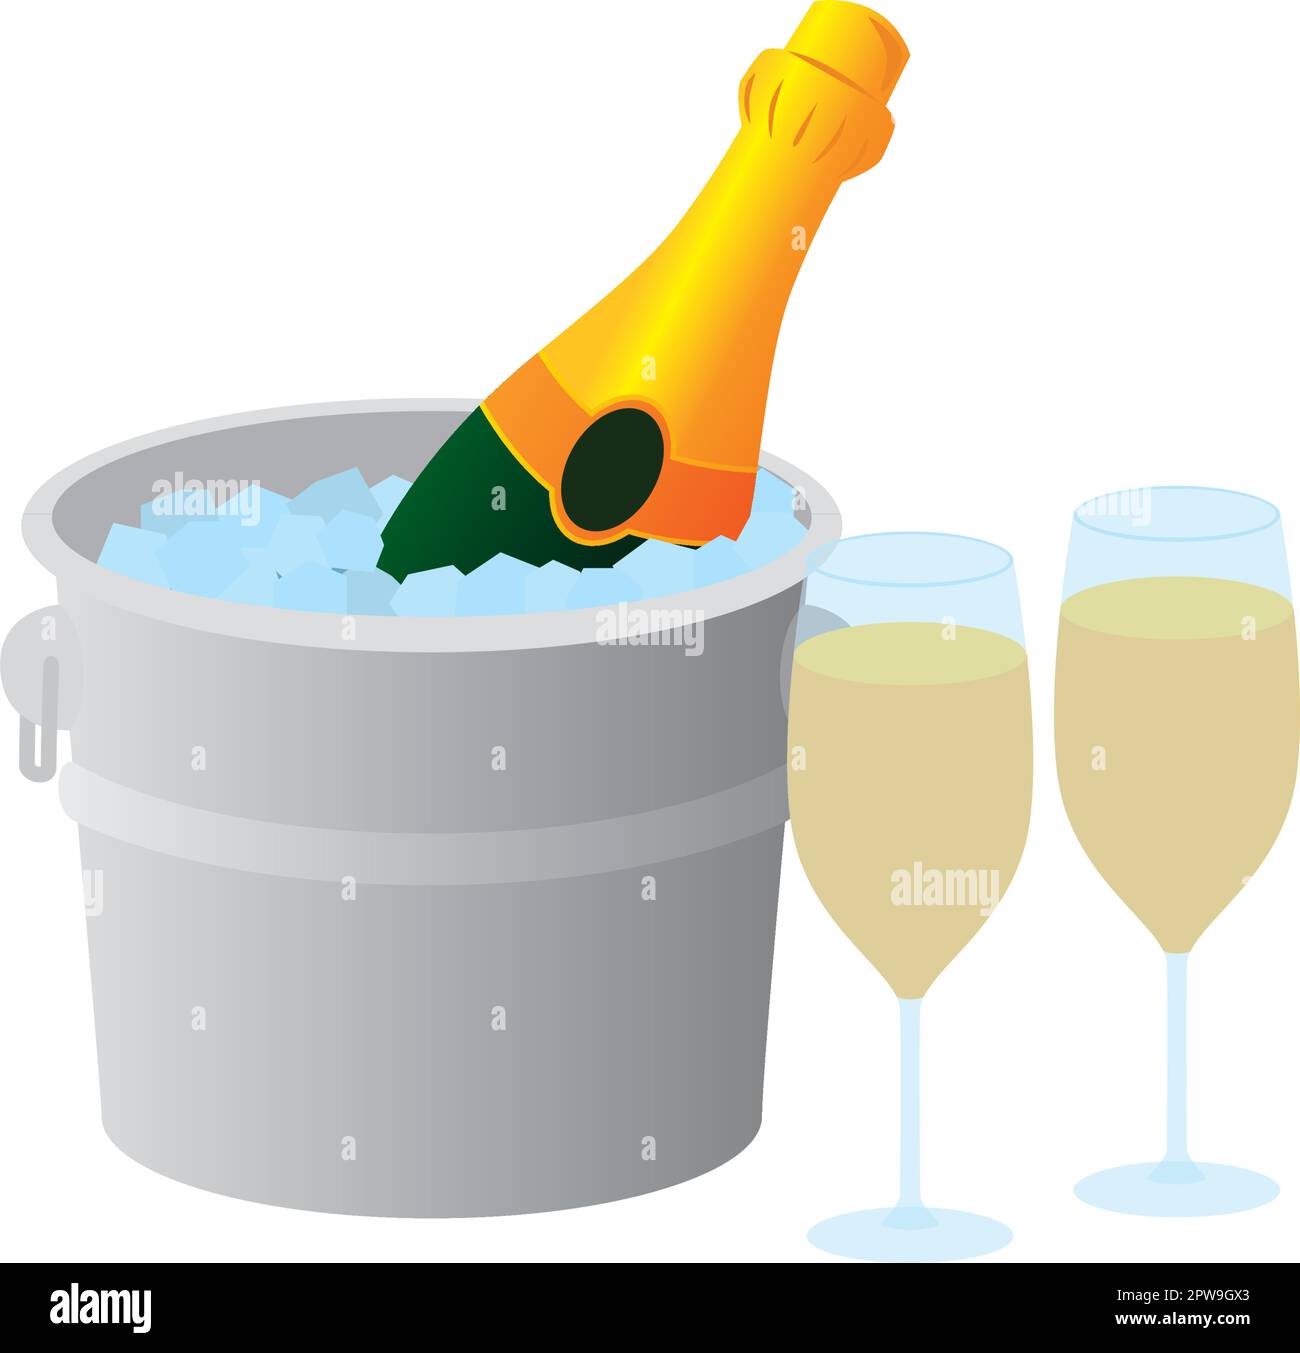 Bouteille de champagne dans un seau avec glace Illustration de Vecteur